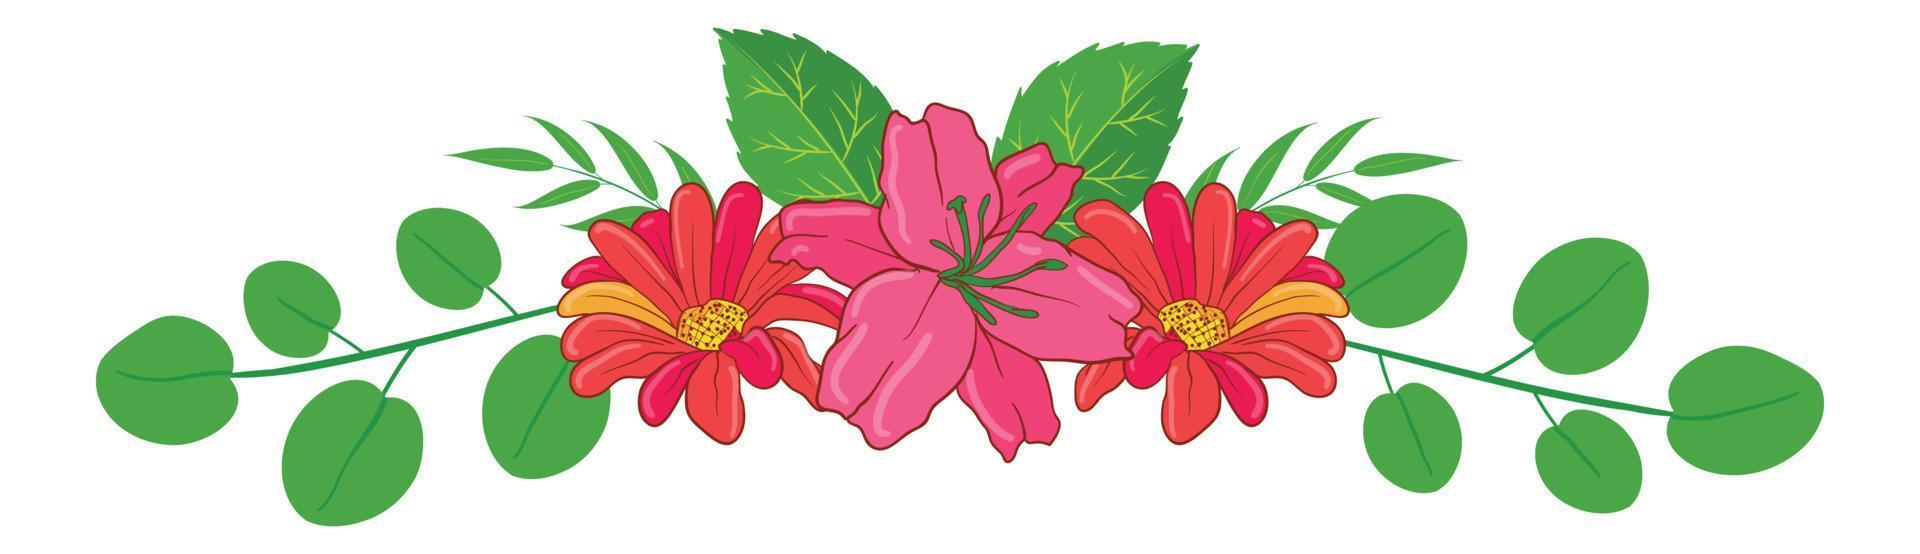 composizione floreale illustrata floreale vettore